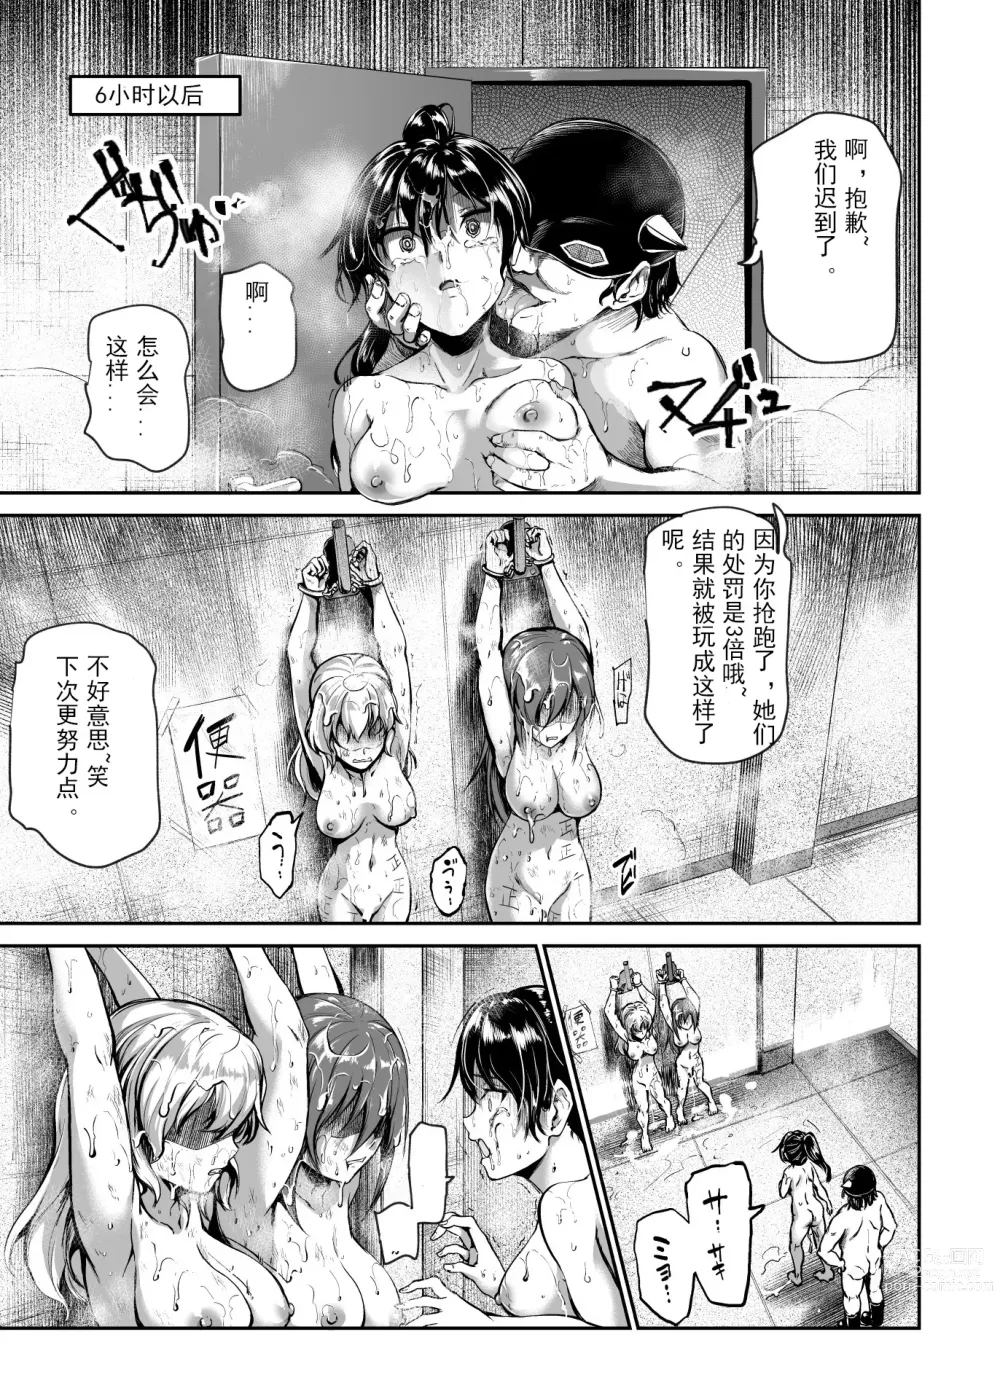 Page 25 of doujinshi 进入邪恶组织工作的话，就可以放肆享受女人性爱自助了吗?EX